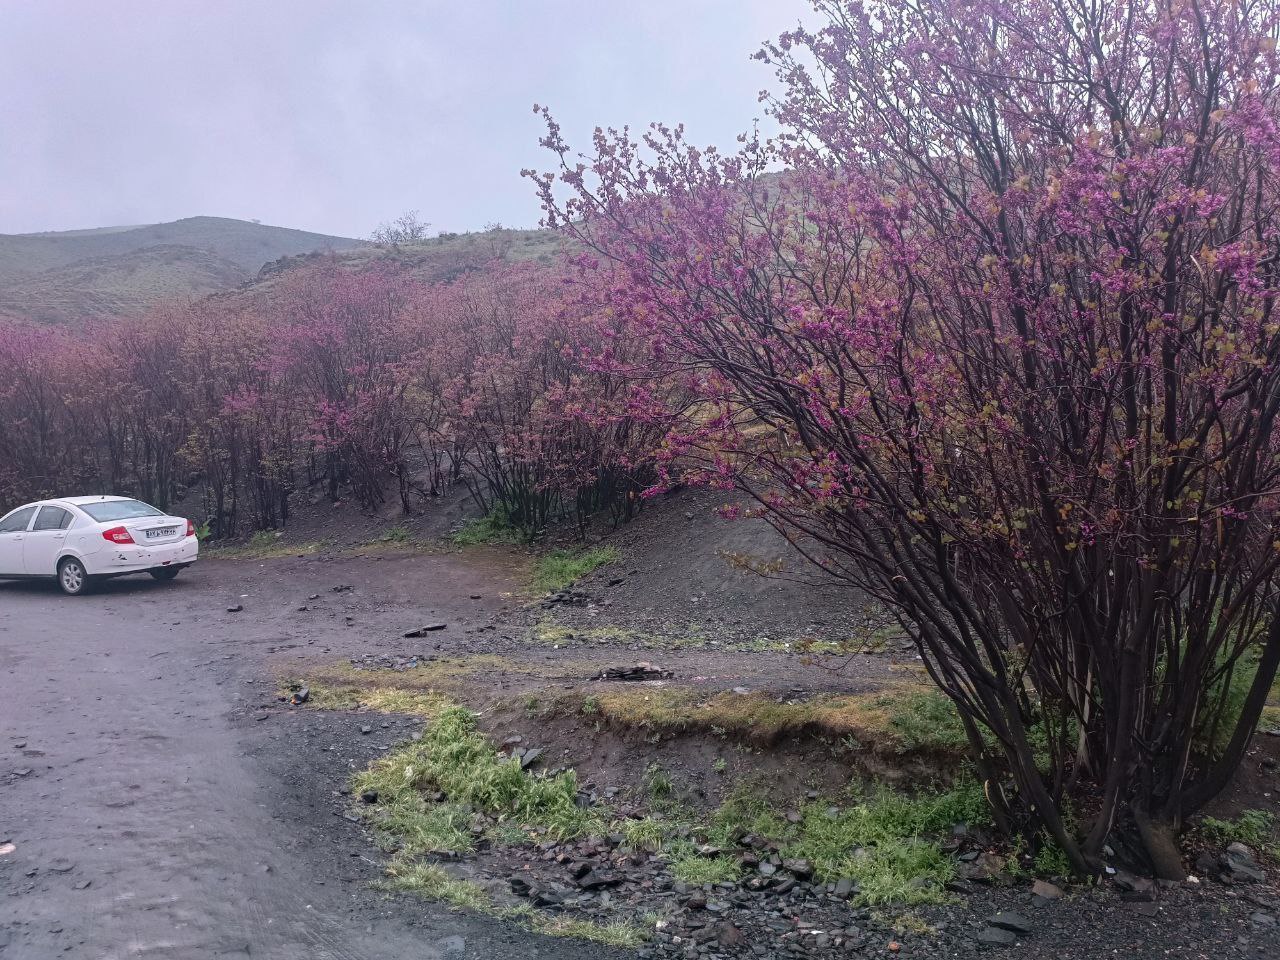 حال و هوای بارانی دره زیبای ارغوان در مشهد